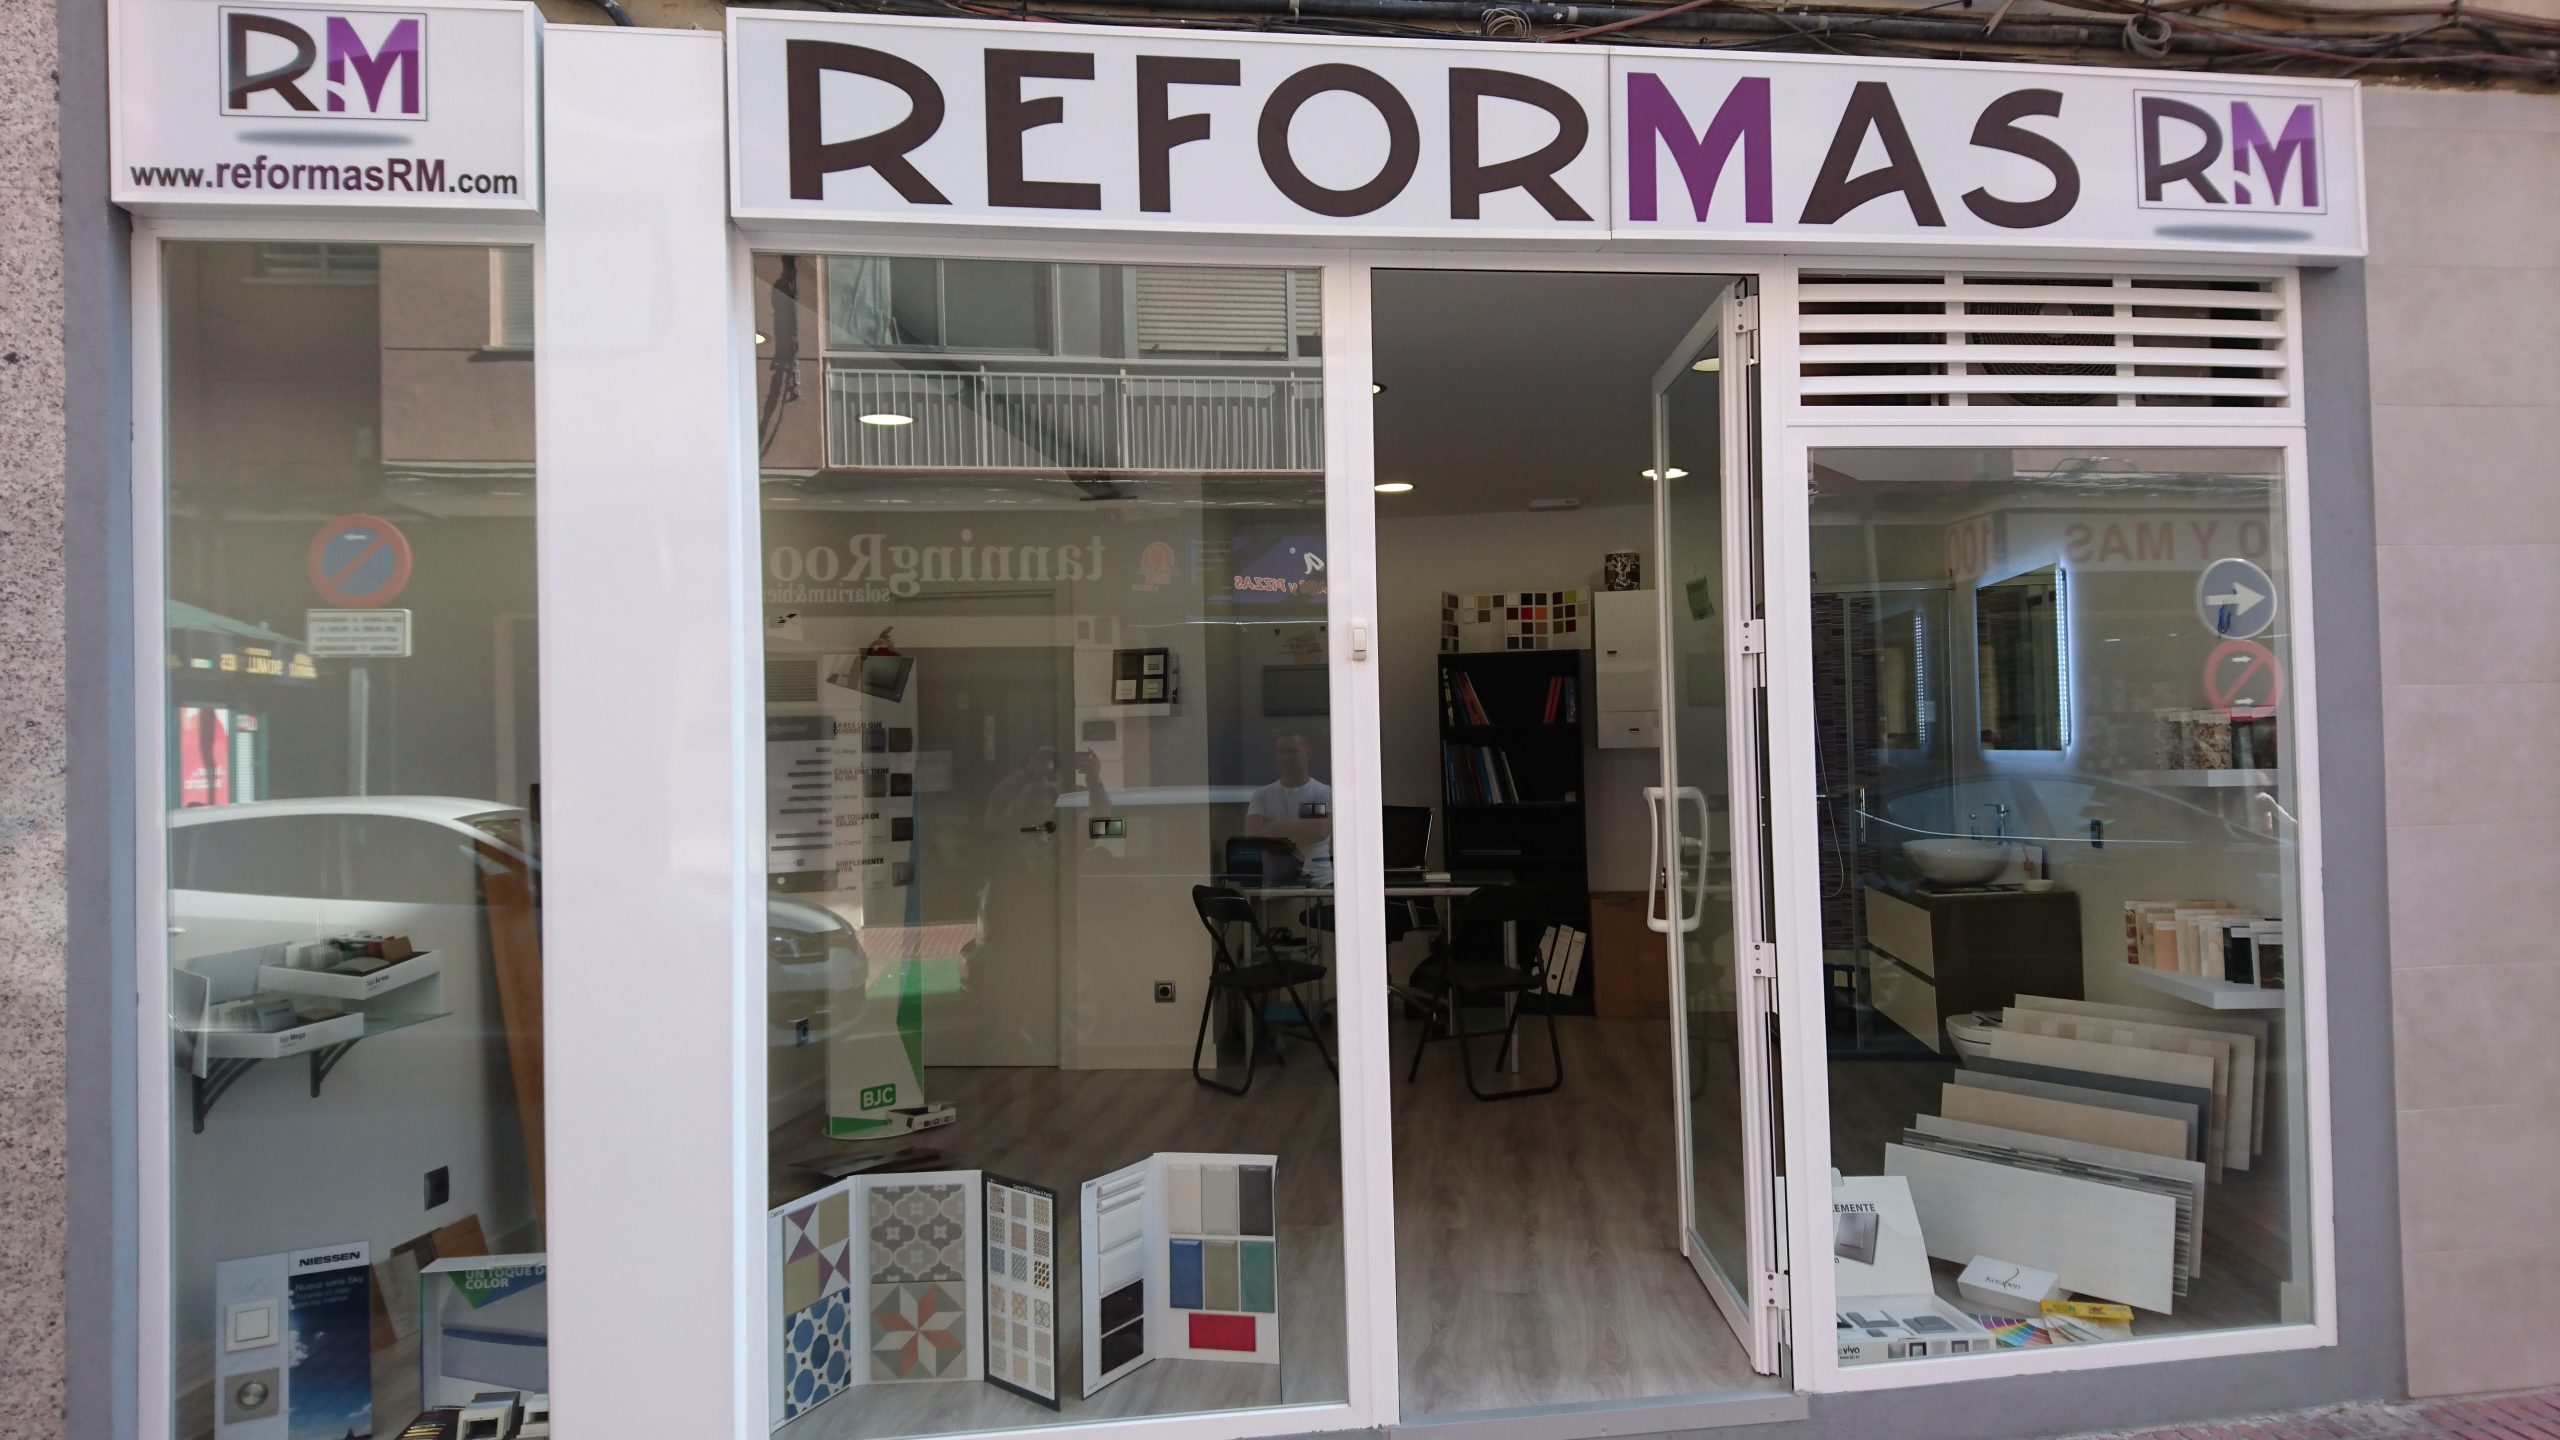 Reformas RM: reformas integrales en zona sur madrid